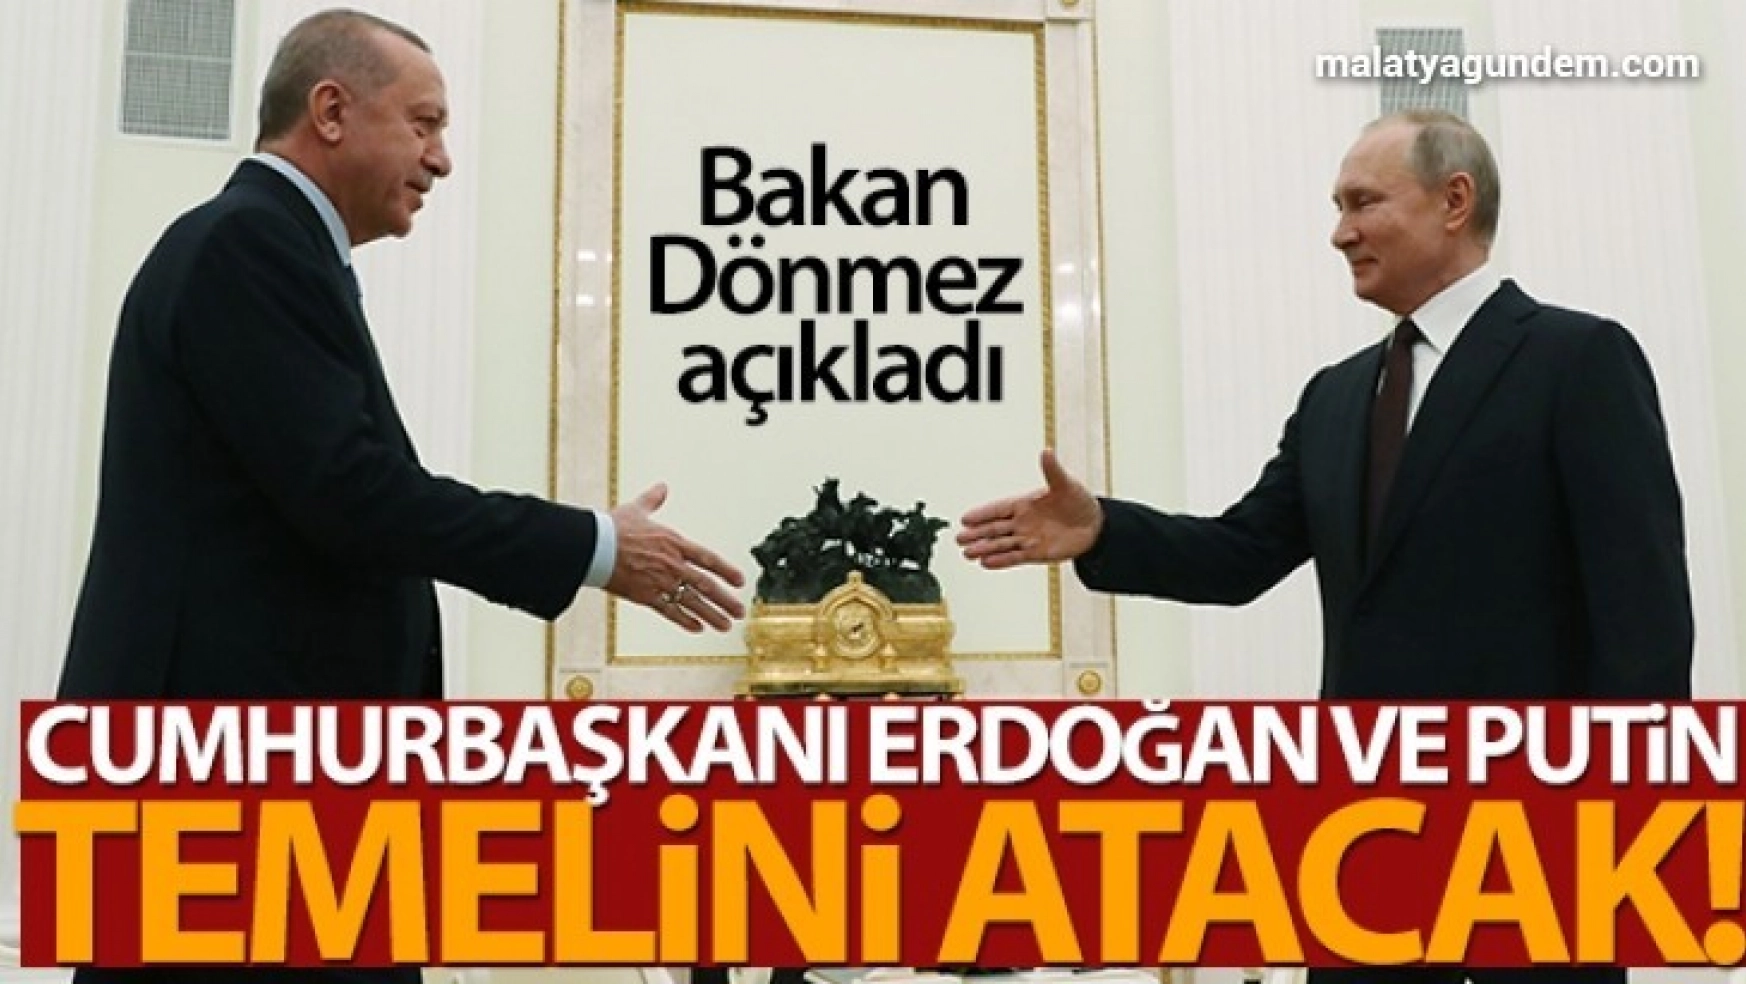 Bakan Dönmez açıkladı: Cumhurbaşkanı Erdoğan ve Putin temelini atacak